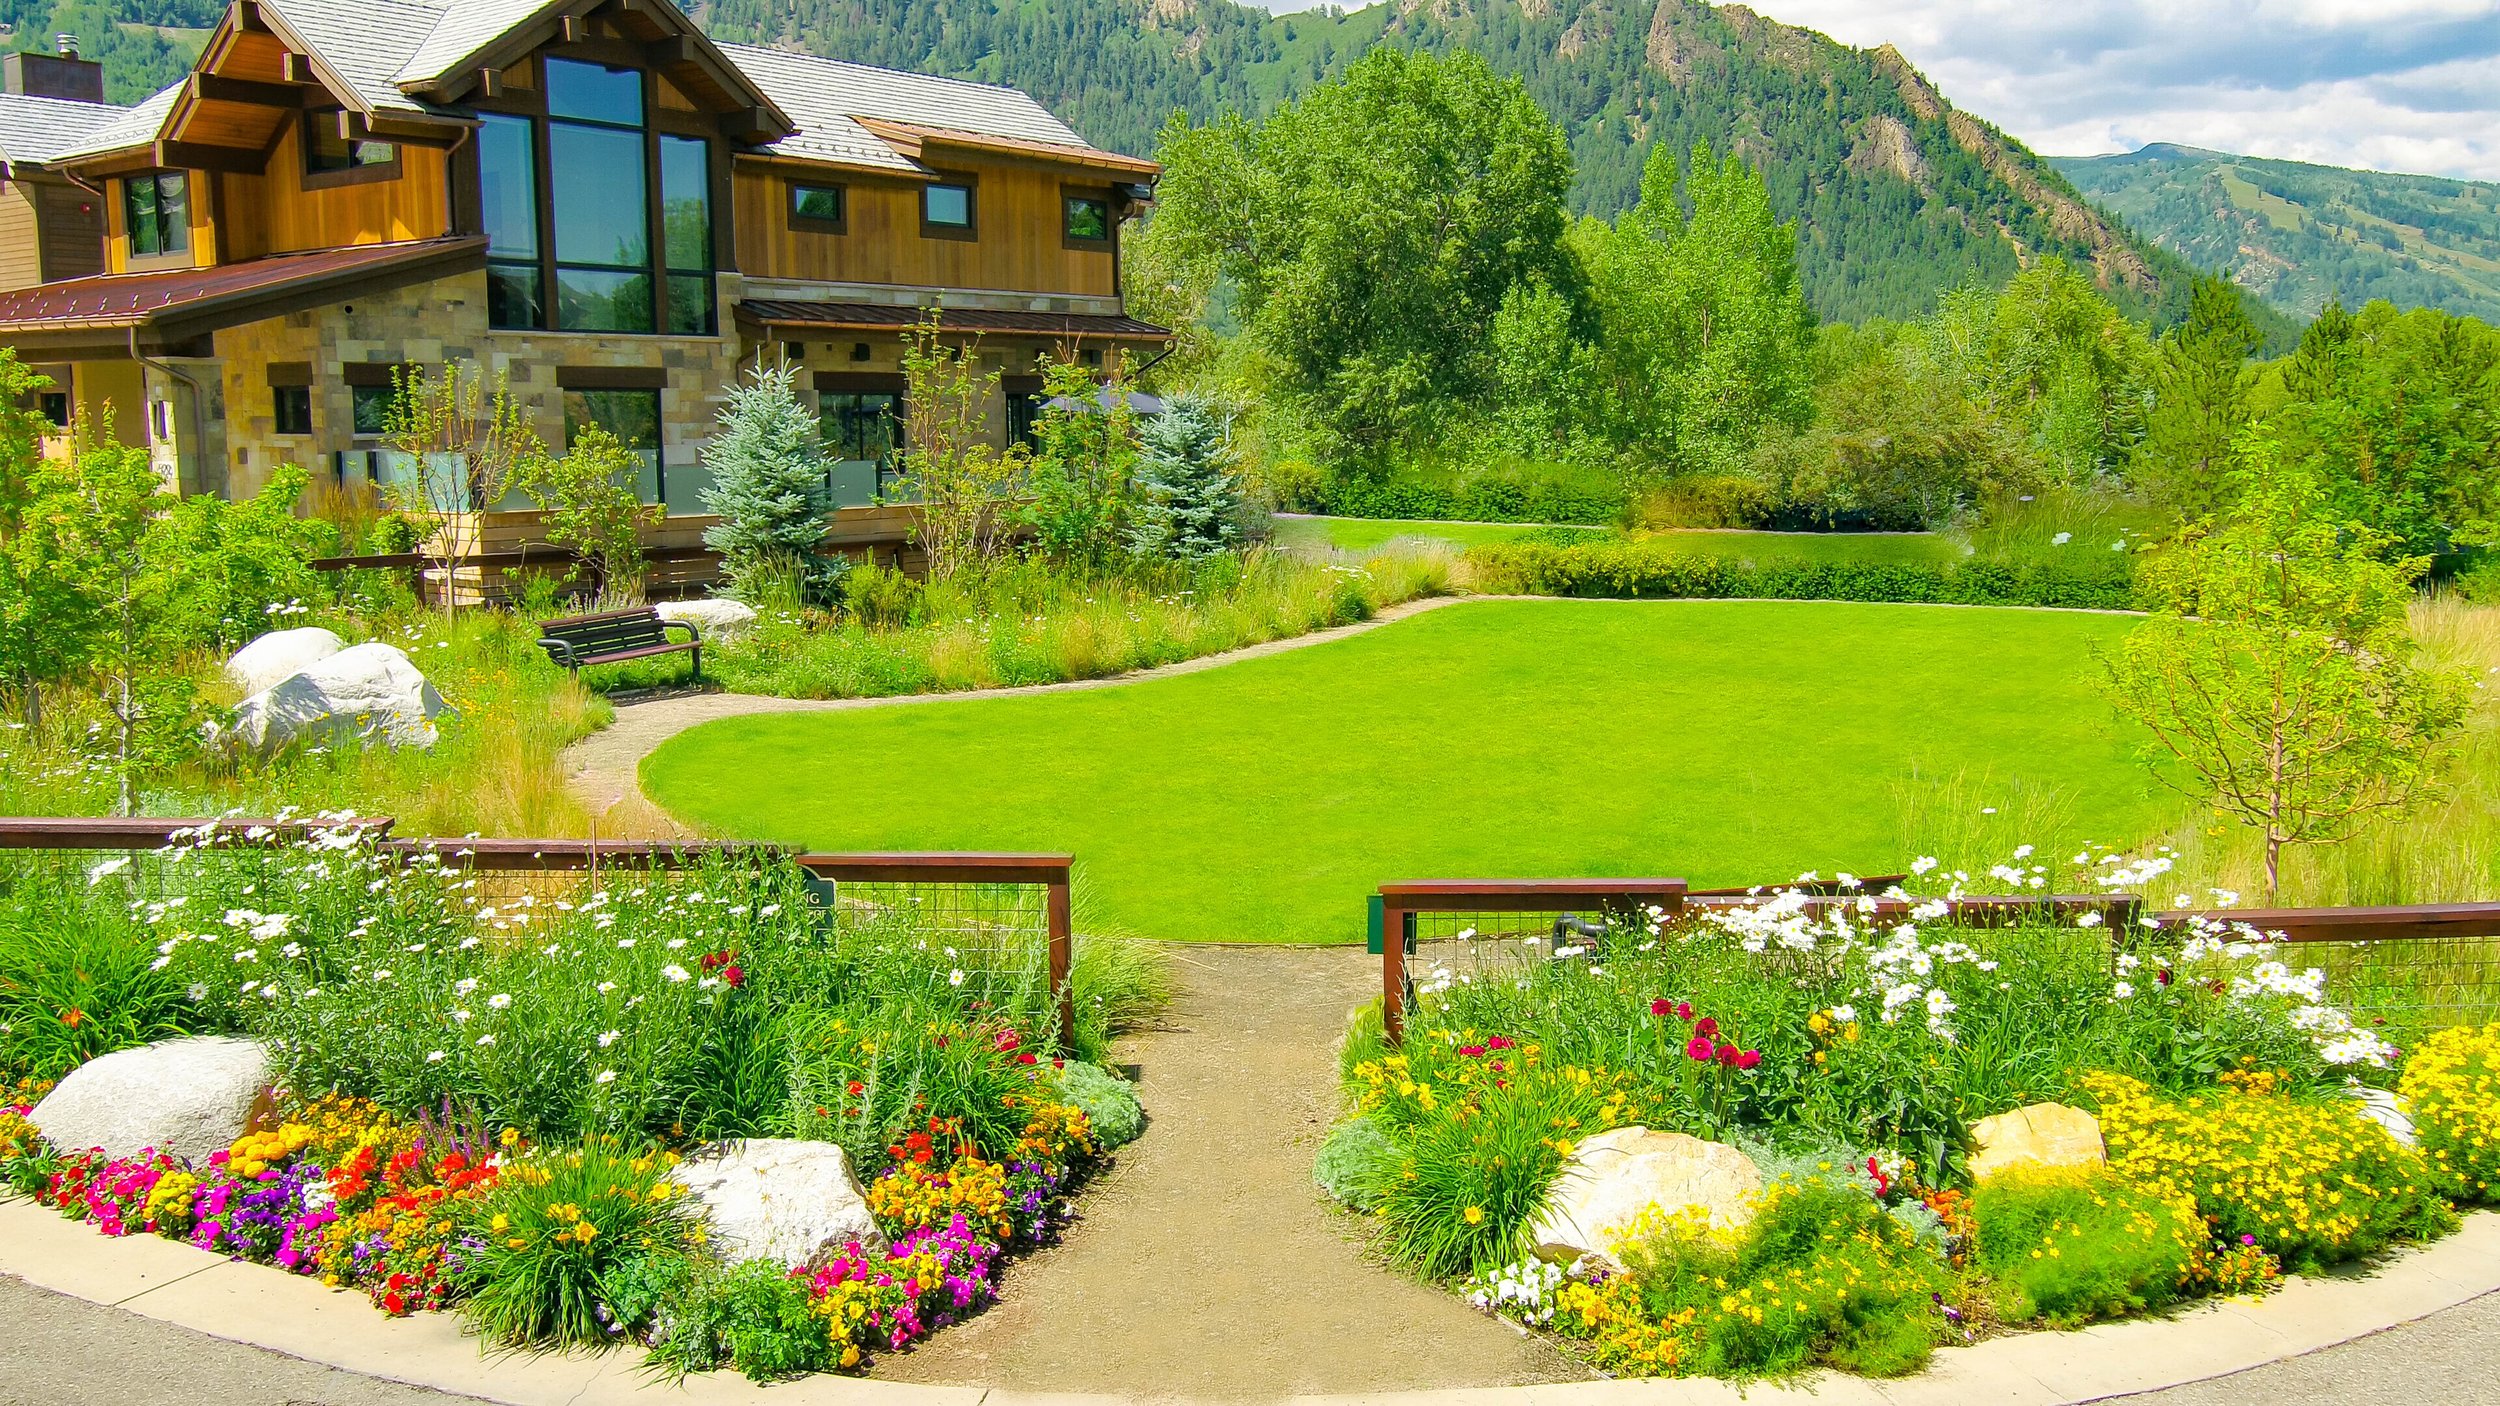 Aspen Park Landscape Architecture